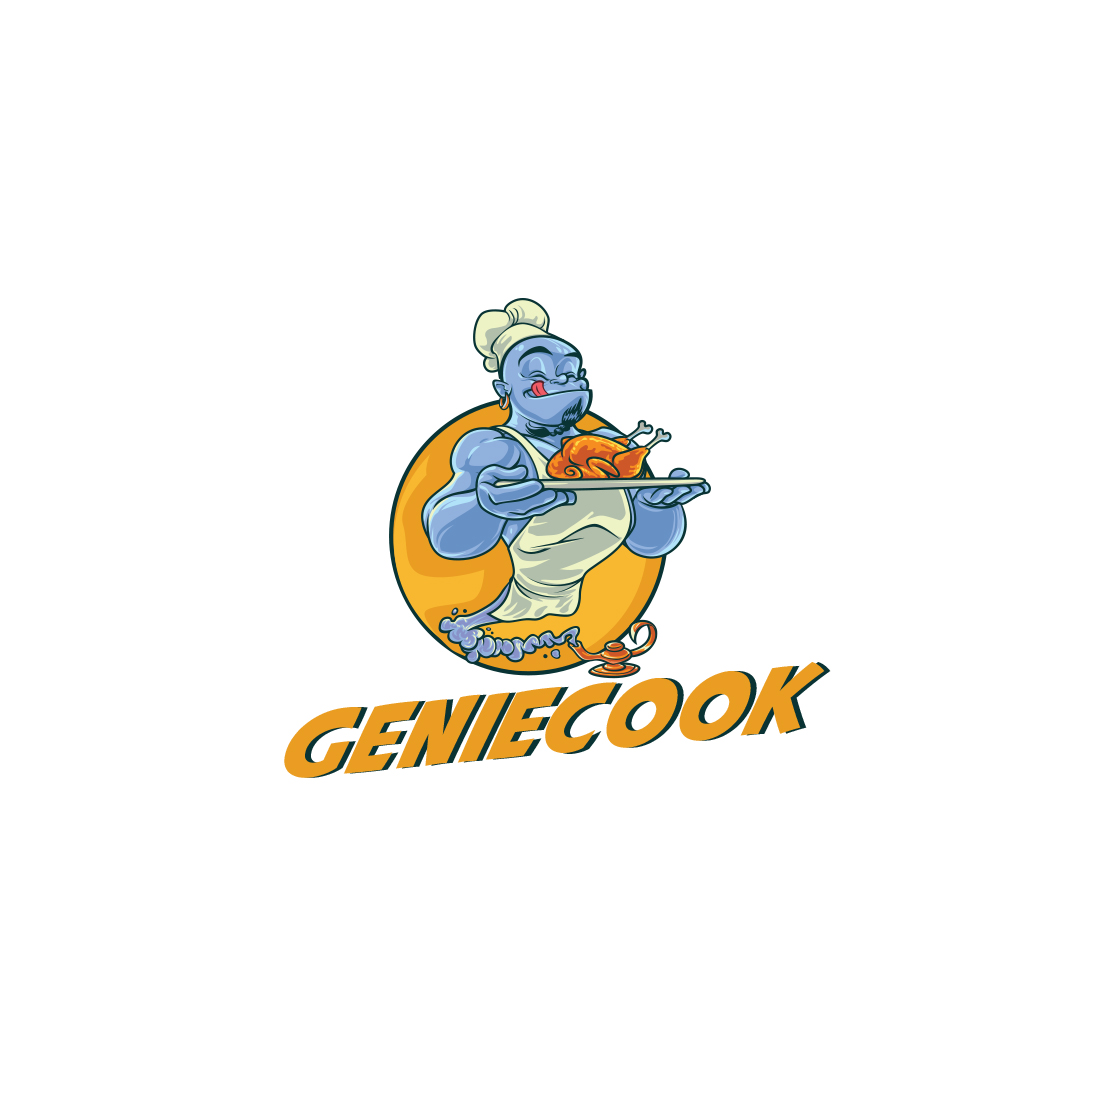 Cartoon Chef Genie Mascot Logo cover image.